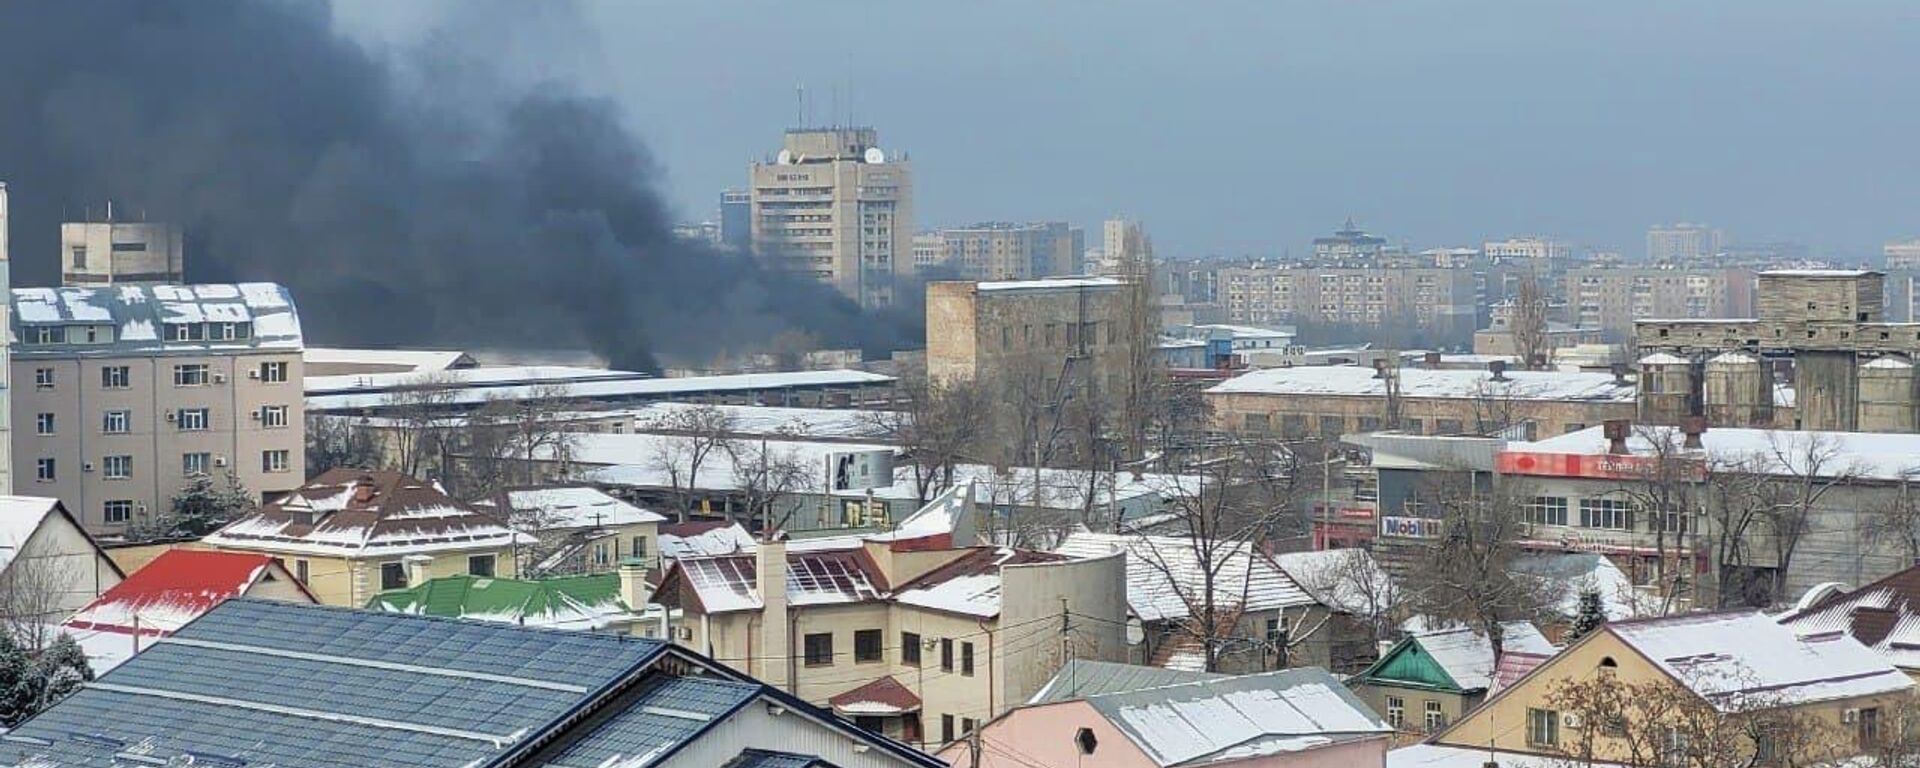 Пожар на цементном заводе в Бишкеке - Sputnik Кыргызстан, 1920, 28.12.2021